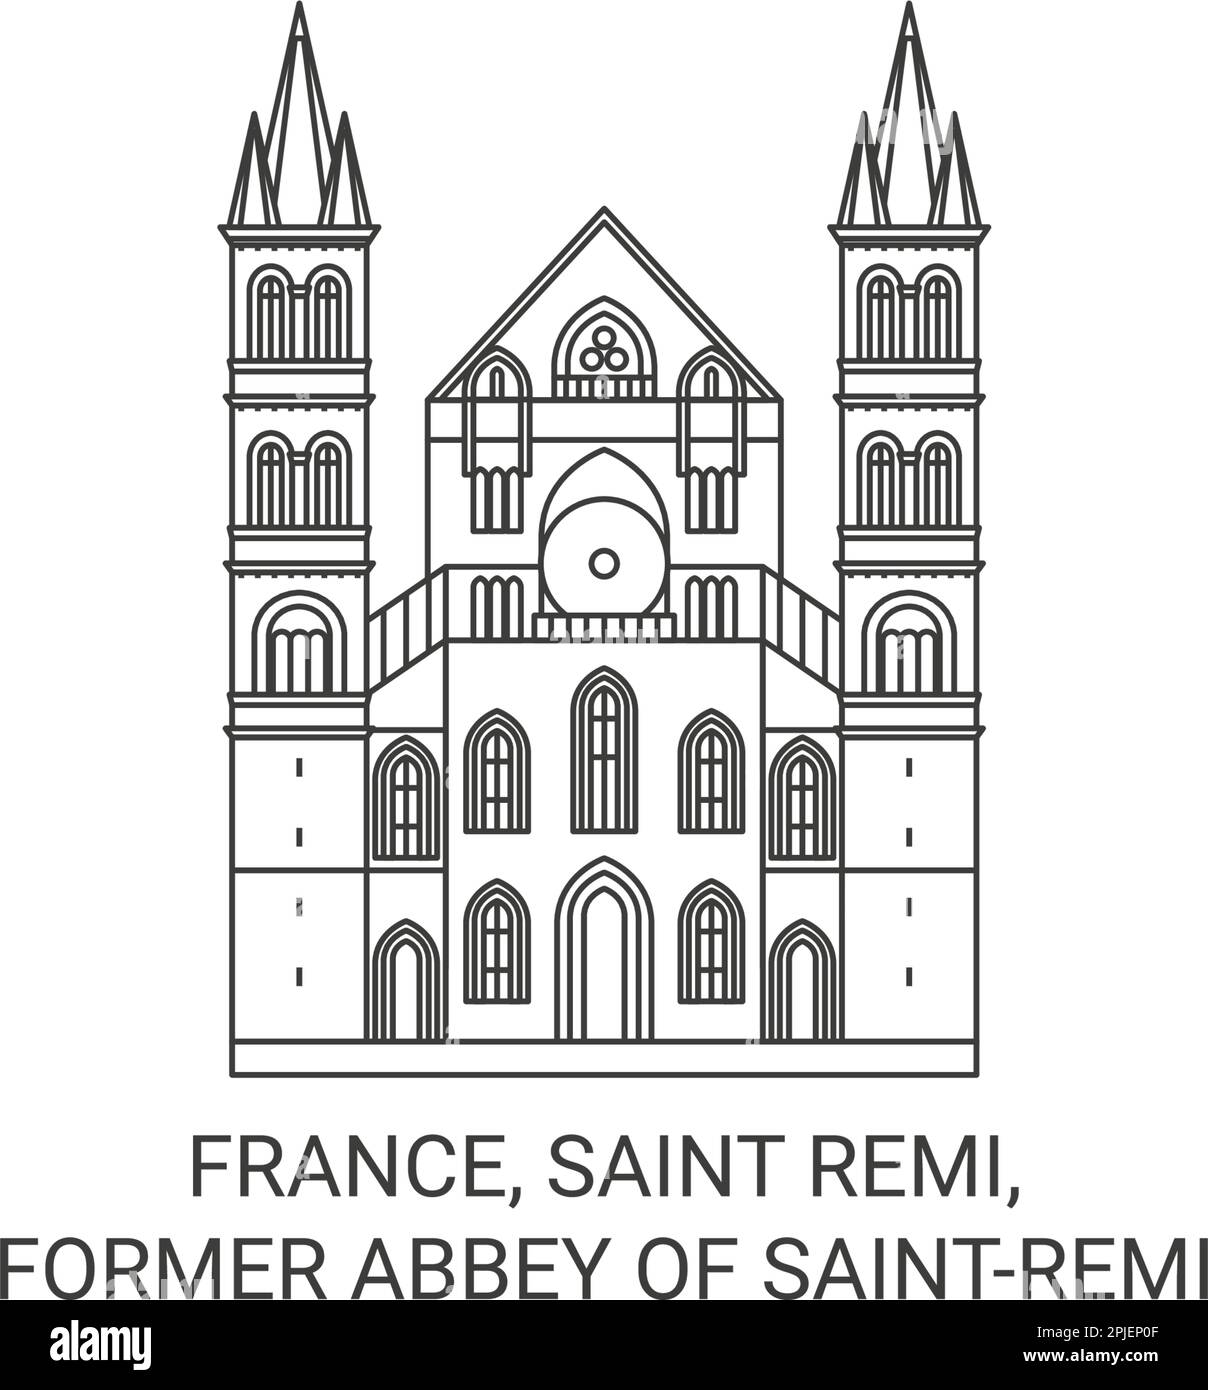 Frankreich, Saint Remi, die ehemalige Abtei von Saintremi Reise-Wahrzeichen-Vektordarstellung Stock Vektor